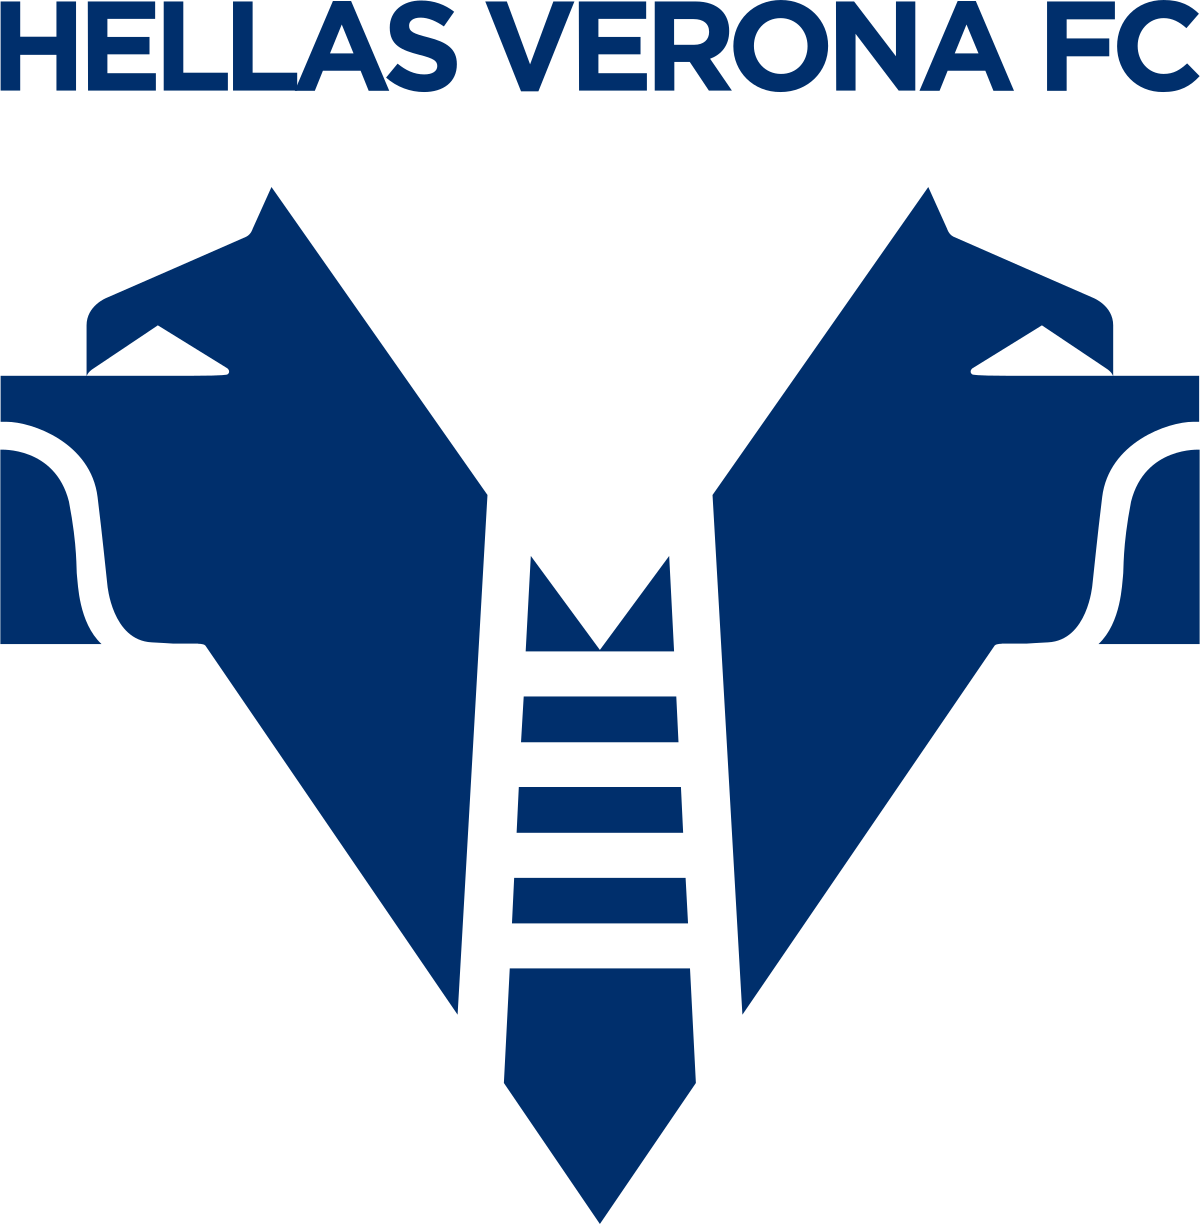 Mercoledì riprende il campionato. L’Hellas va a Torino in cerca di un risultato che segni l’inizio della risalita